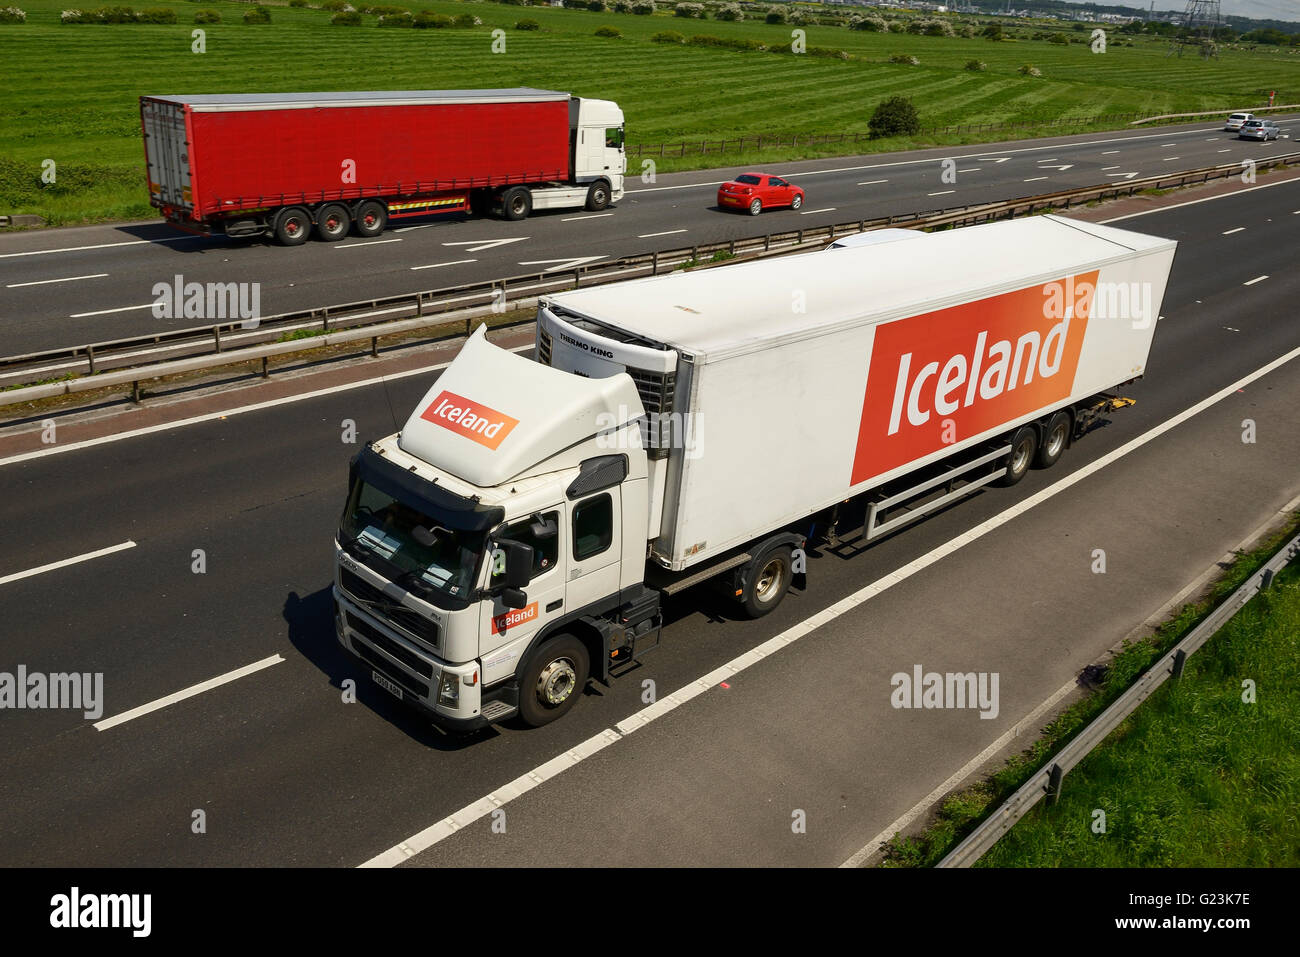 Islanda HGV che viaggiano sulla M56 Autostrada nel Cheshire Regno Unito Foto Stock